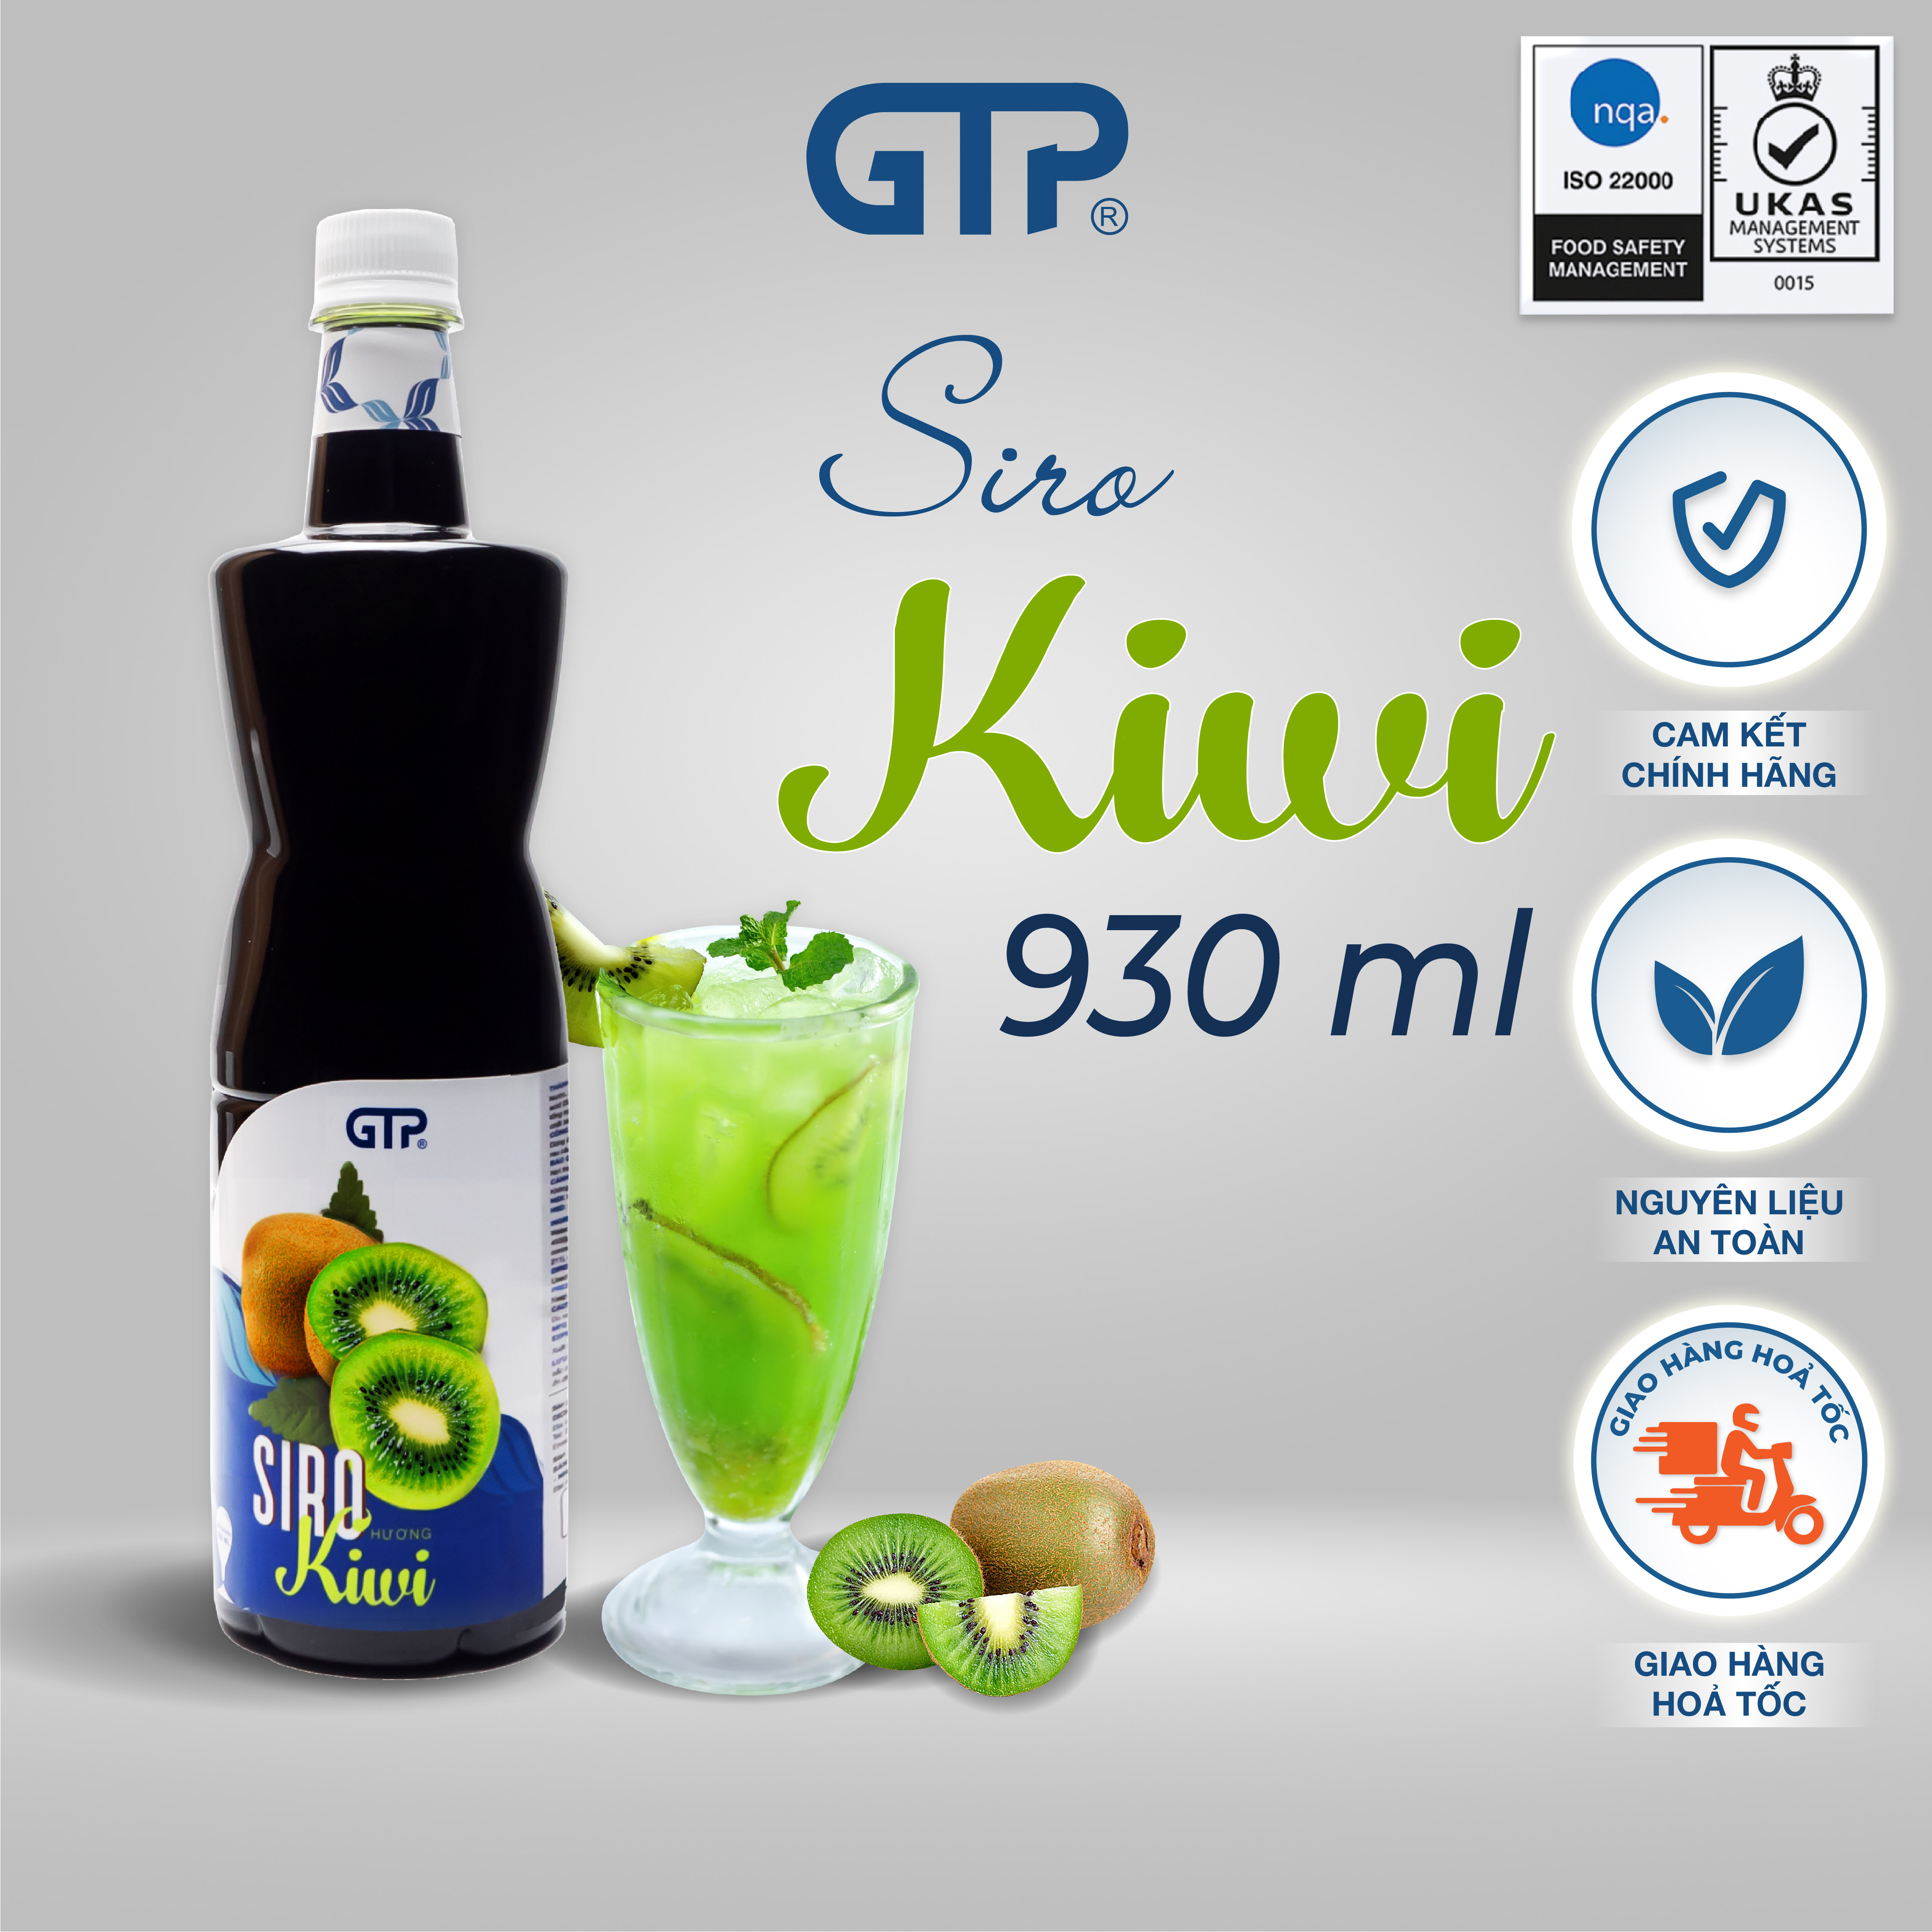 Siro GTP hương Kiwi/ Táo xanh/ Khoai môn